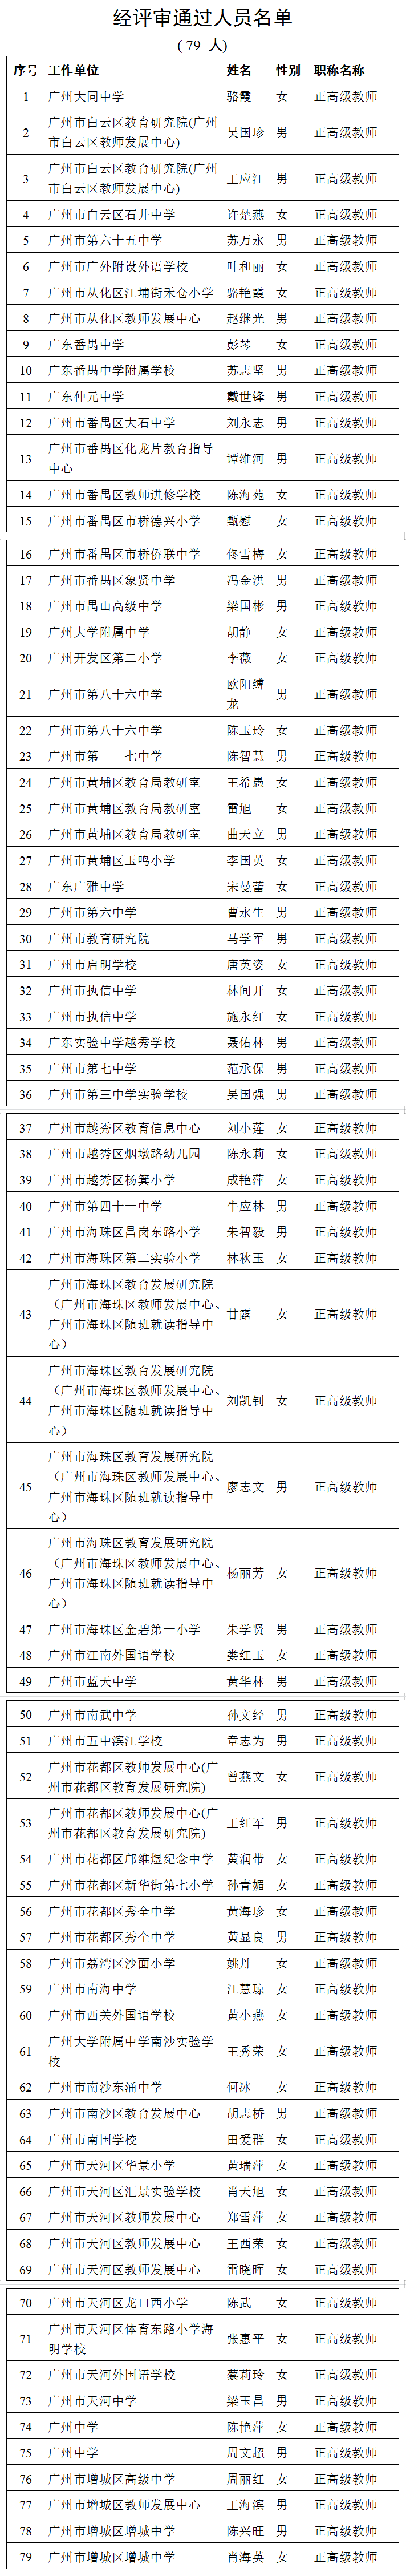 广州市中小学正高级教师职称评审通过人员名单公示